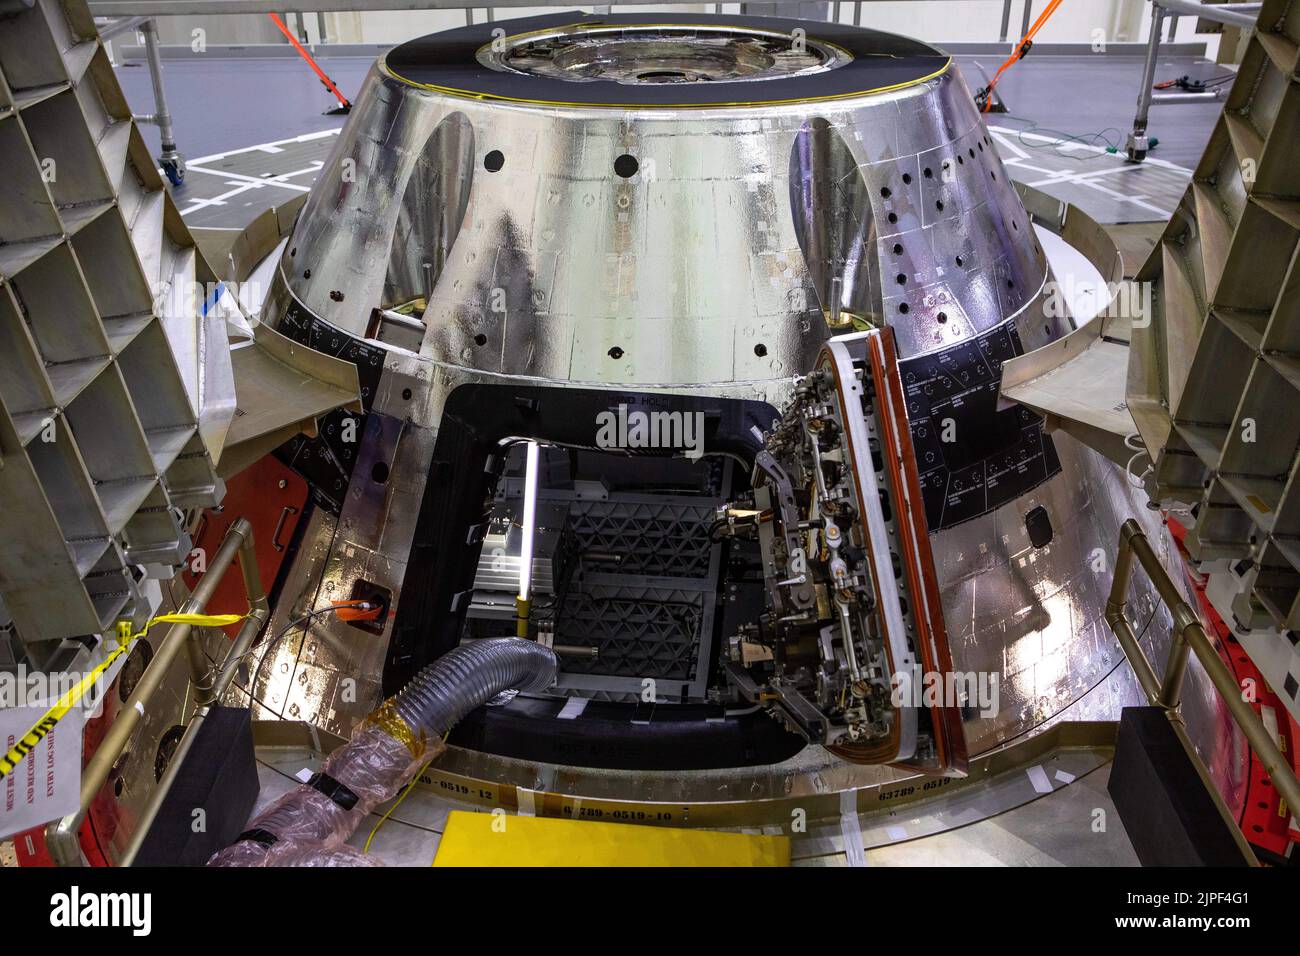 Centro Espacial Kennedy, Florida, EE.UU. 23rd de Nov de 2020. Fijada a la parte superior de Orión para la misión de Artemis I está la brillante, recientemente instalada cubierta de la bahía. Esta pieza crítica de hardware protegerá la parte superior del módulo de la tripulación de Orión a medida que la cápsula se revienta a través de la atmósfera de la Tierra a velocidades de más de 25.000 mph. Después de la reentrada, los mecanismos del jettison generarán suficiente empuje para empujar la cubierta lejos de la nave espacial y permitir que los tres paracaídas principales se desplieguen, estabilizando y reduciendo la velocidad de la cápsula a 20 mph o menos para una caída segura en el Océano Pacífico. (Imagen de Crédito: © Co Foto de stock